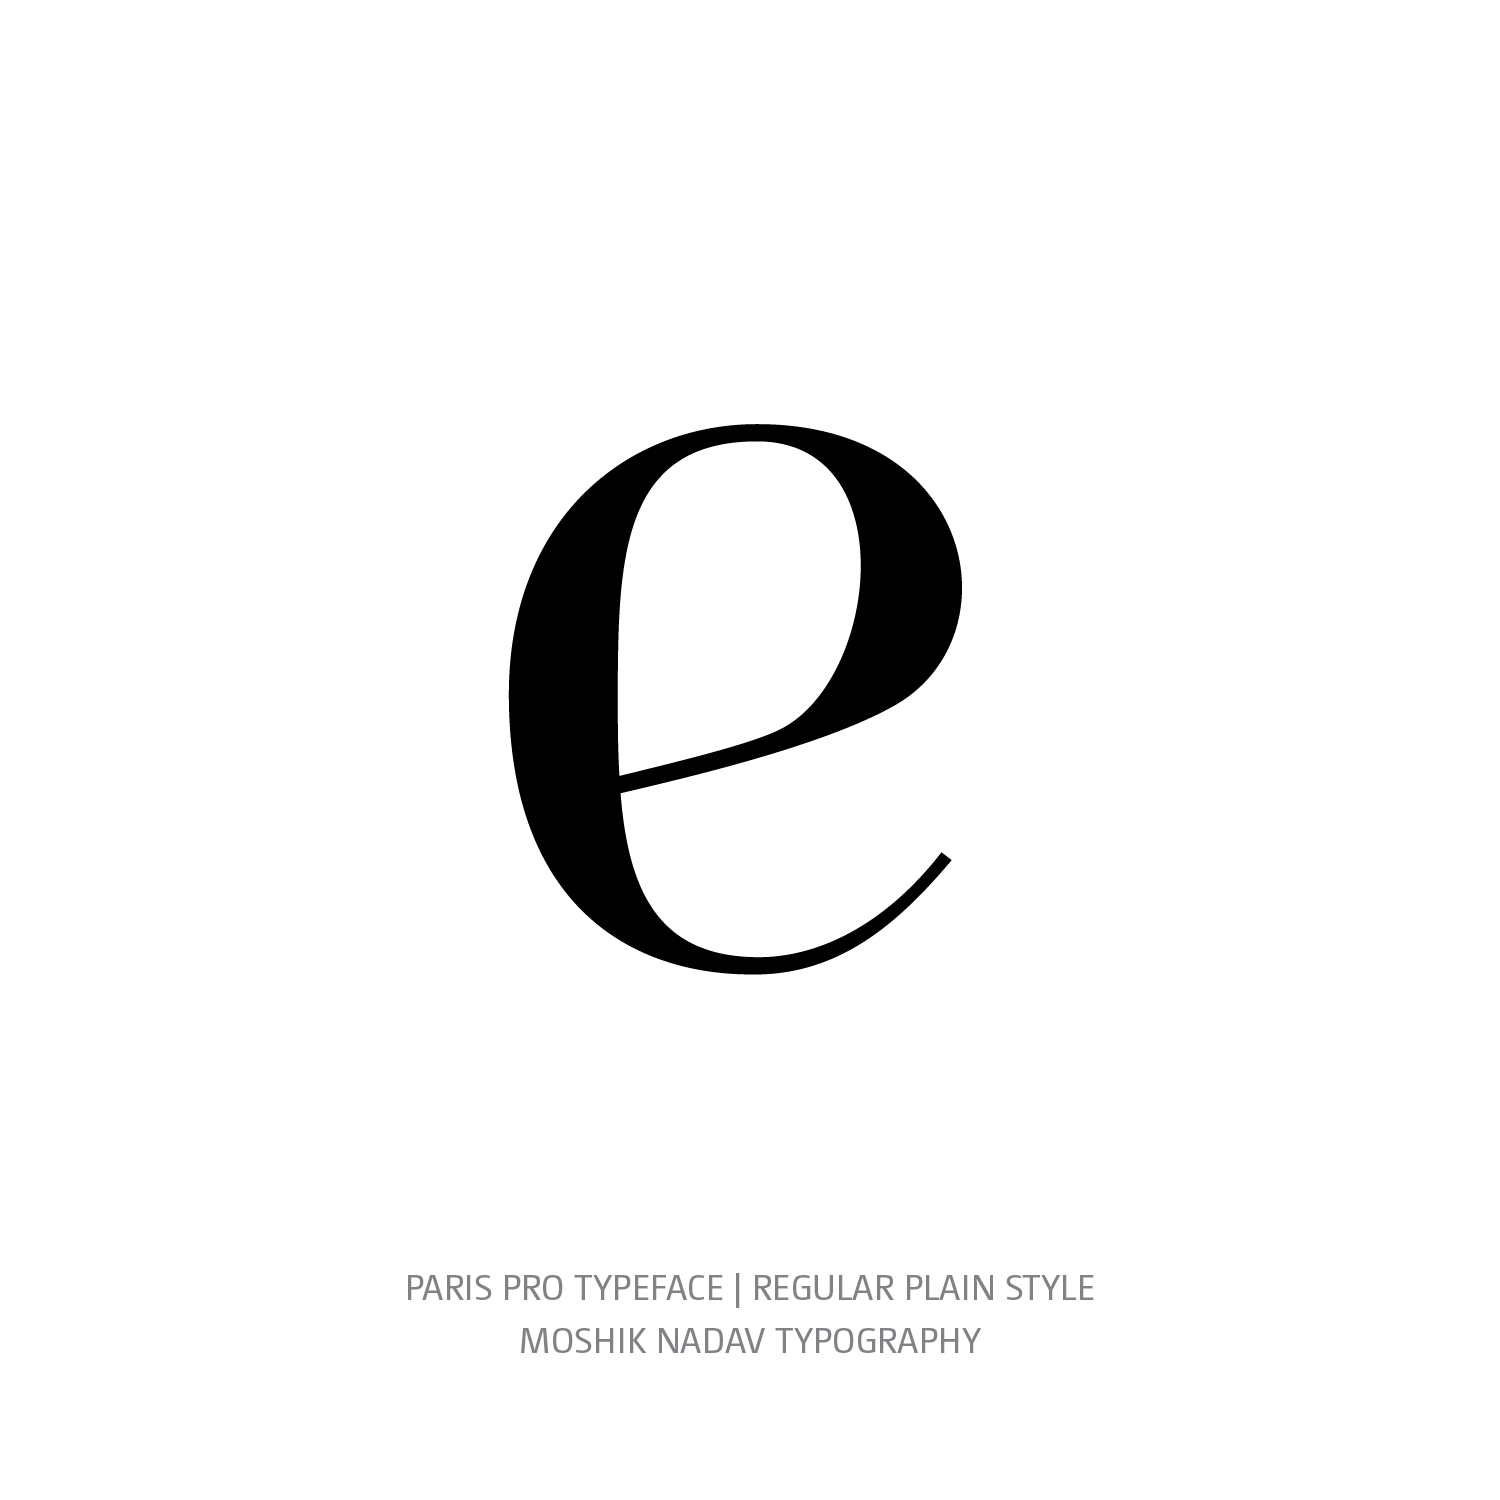 Paris Pro Typeface Regular Plain e